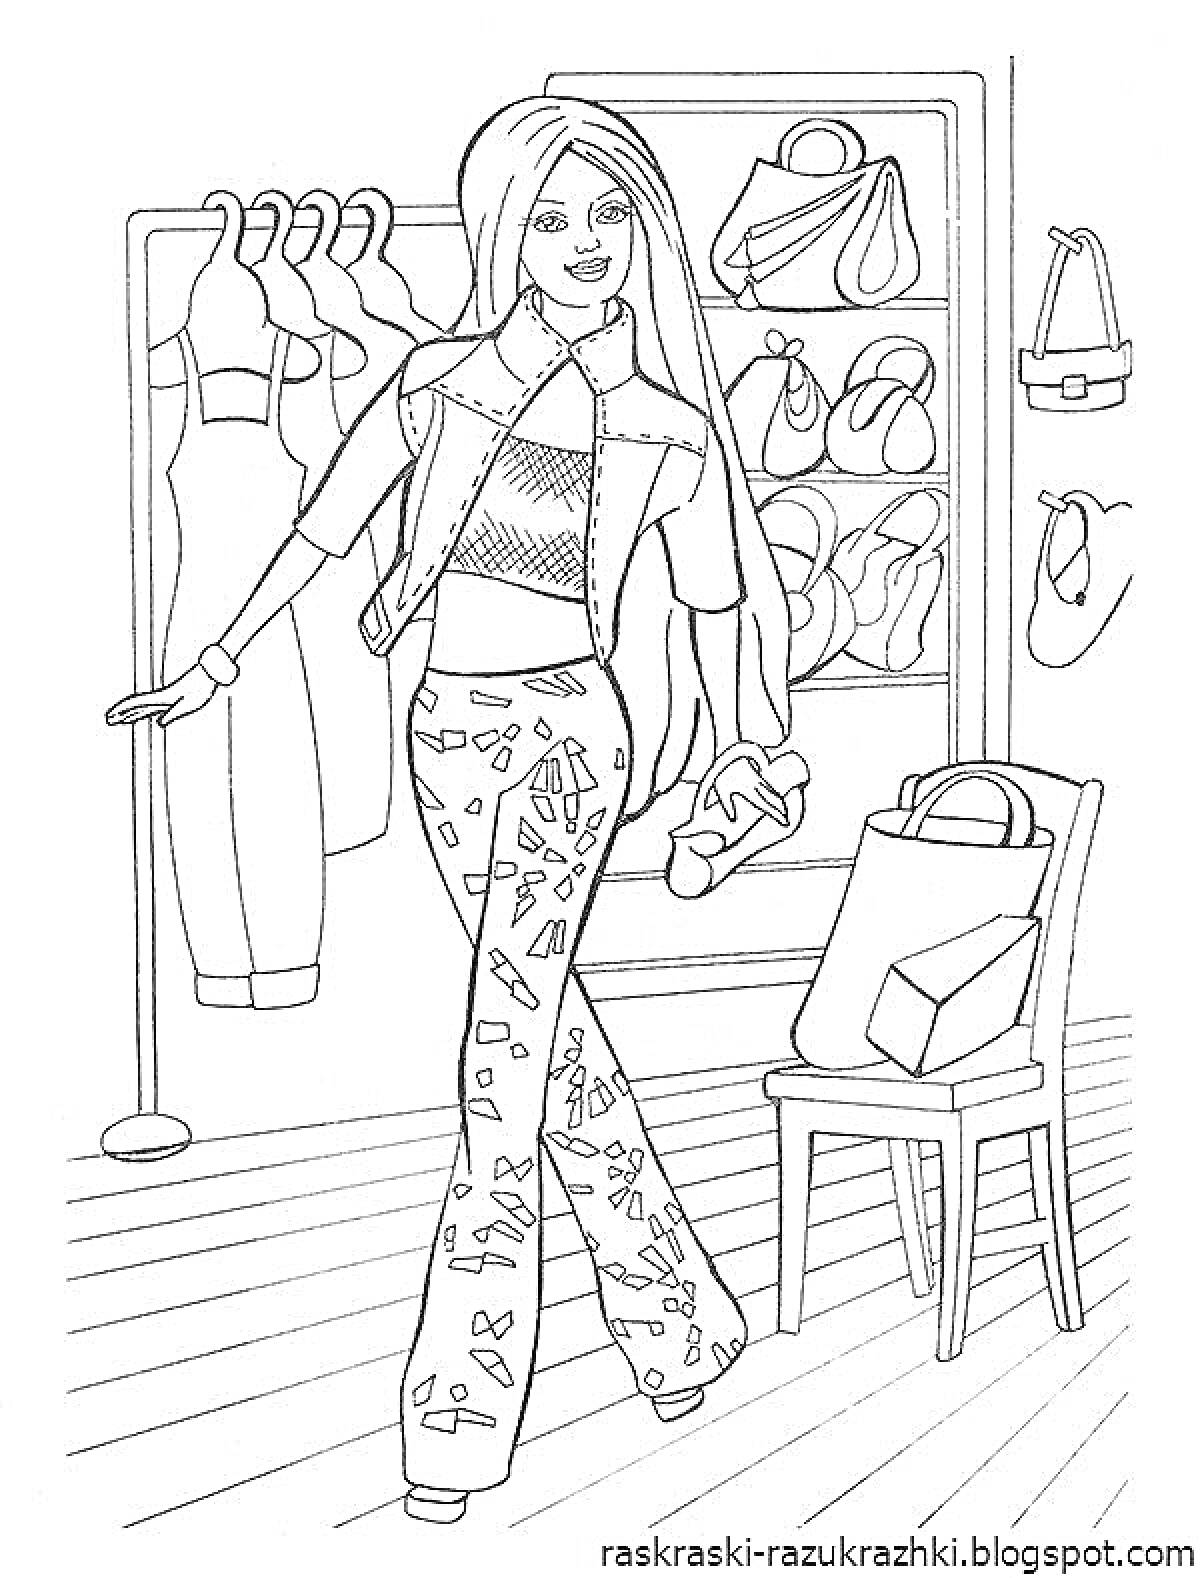 Барби в гардеробе с одеждой и аксессуарами, в руках обувь, на заднем фоне полки с сумками